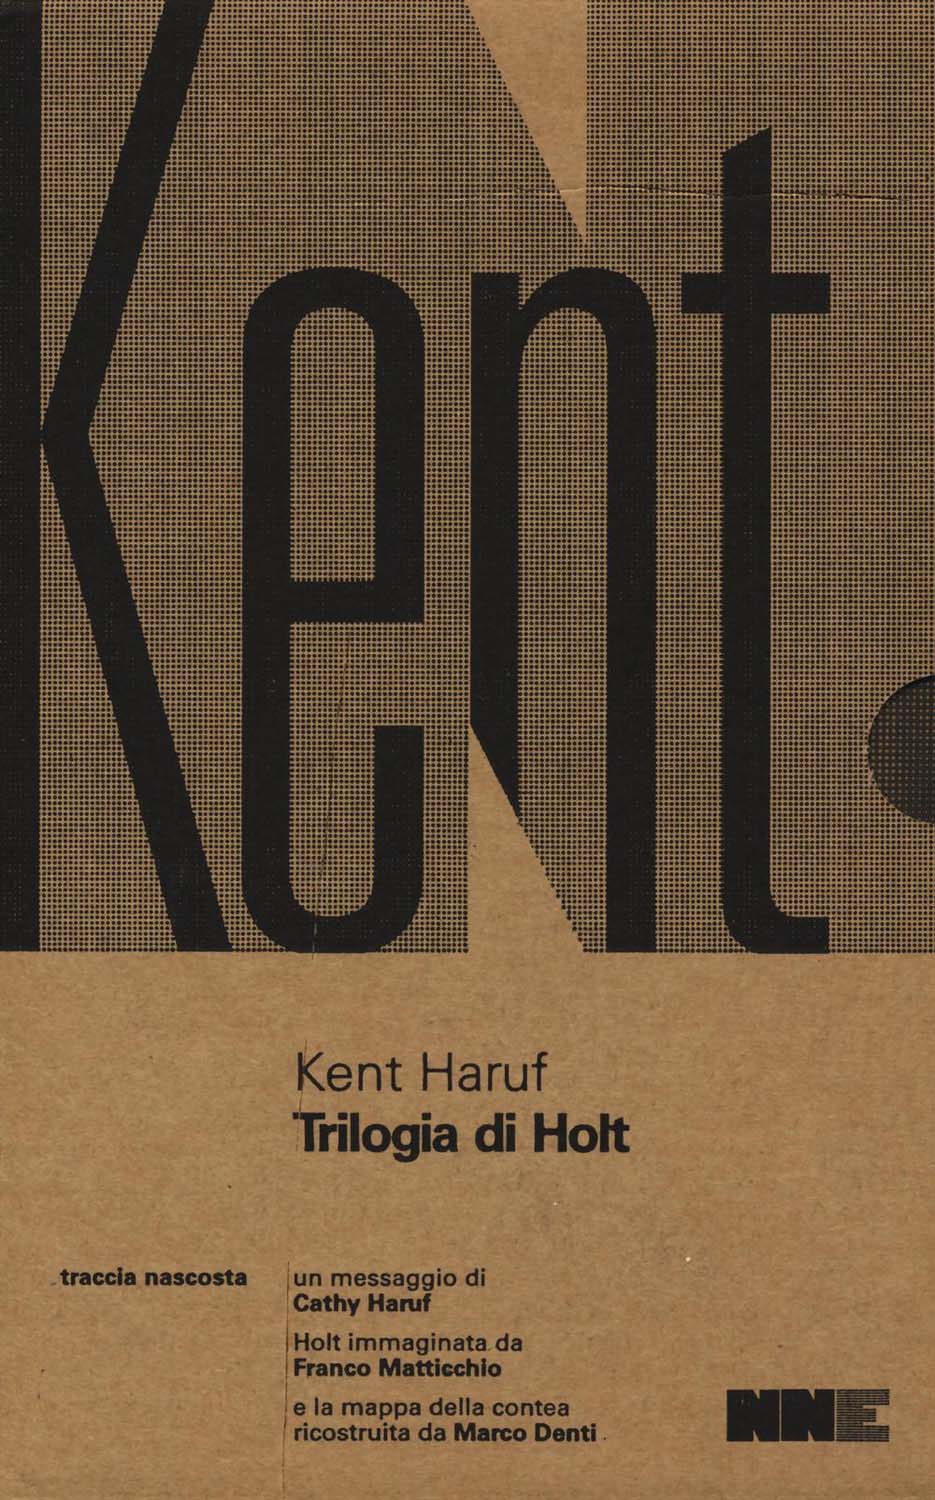 Libri Kent Haruf - Trilogia Di Holt: Benedizione-Crepuscolo-Canto Della Pianura NUOVO SIGILLATO, EDIZIONE DEL 24/11/2016 SUBITO DISPONIBILE